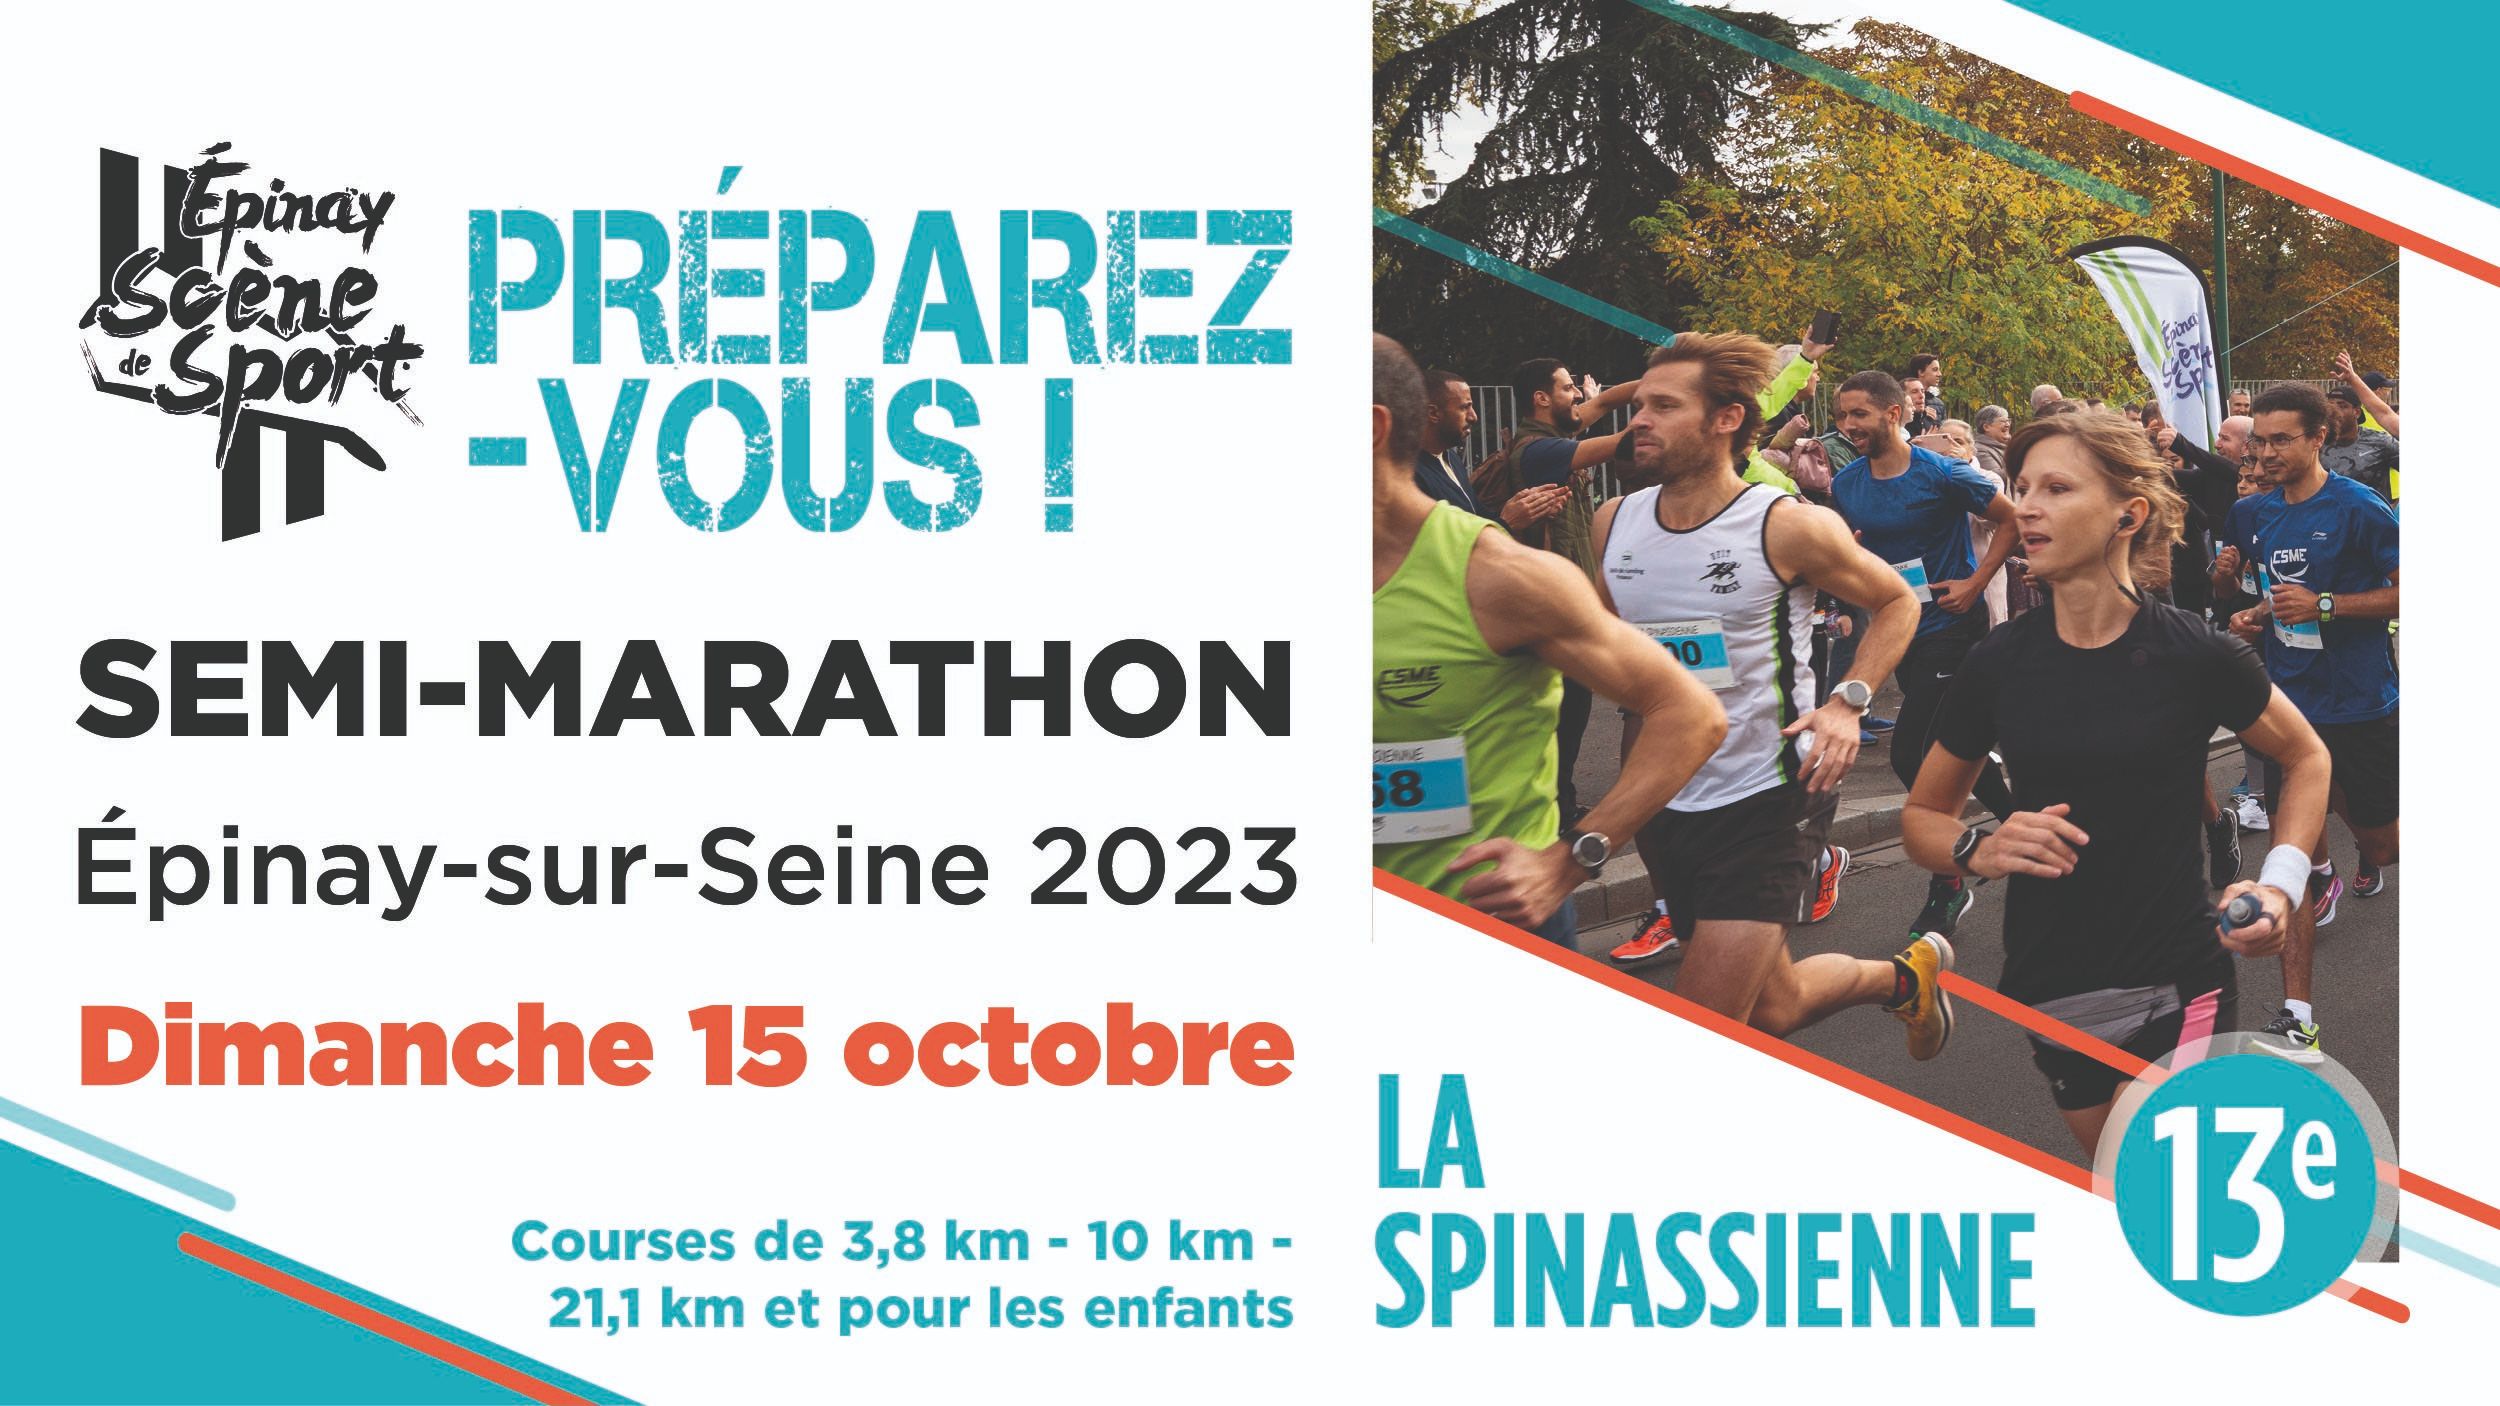 Site Ville 900x506 - Preěparez-vous Semi-Marathon 2023.jpg